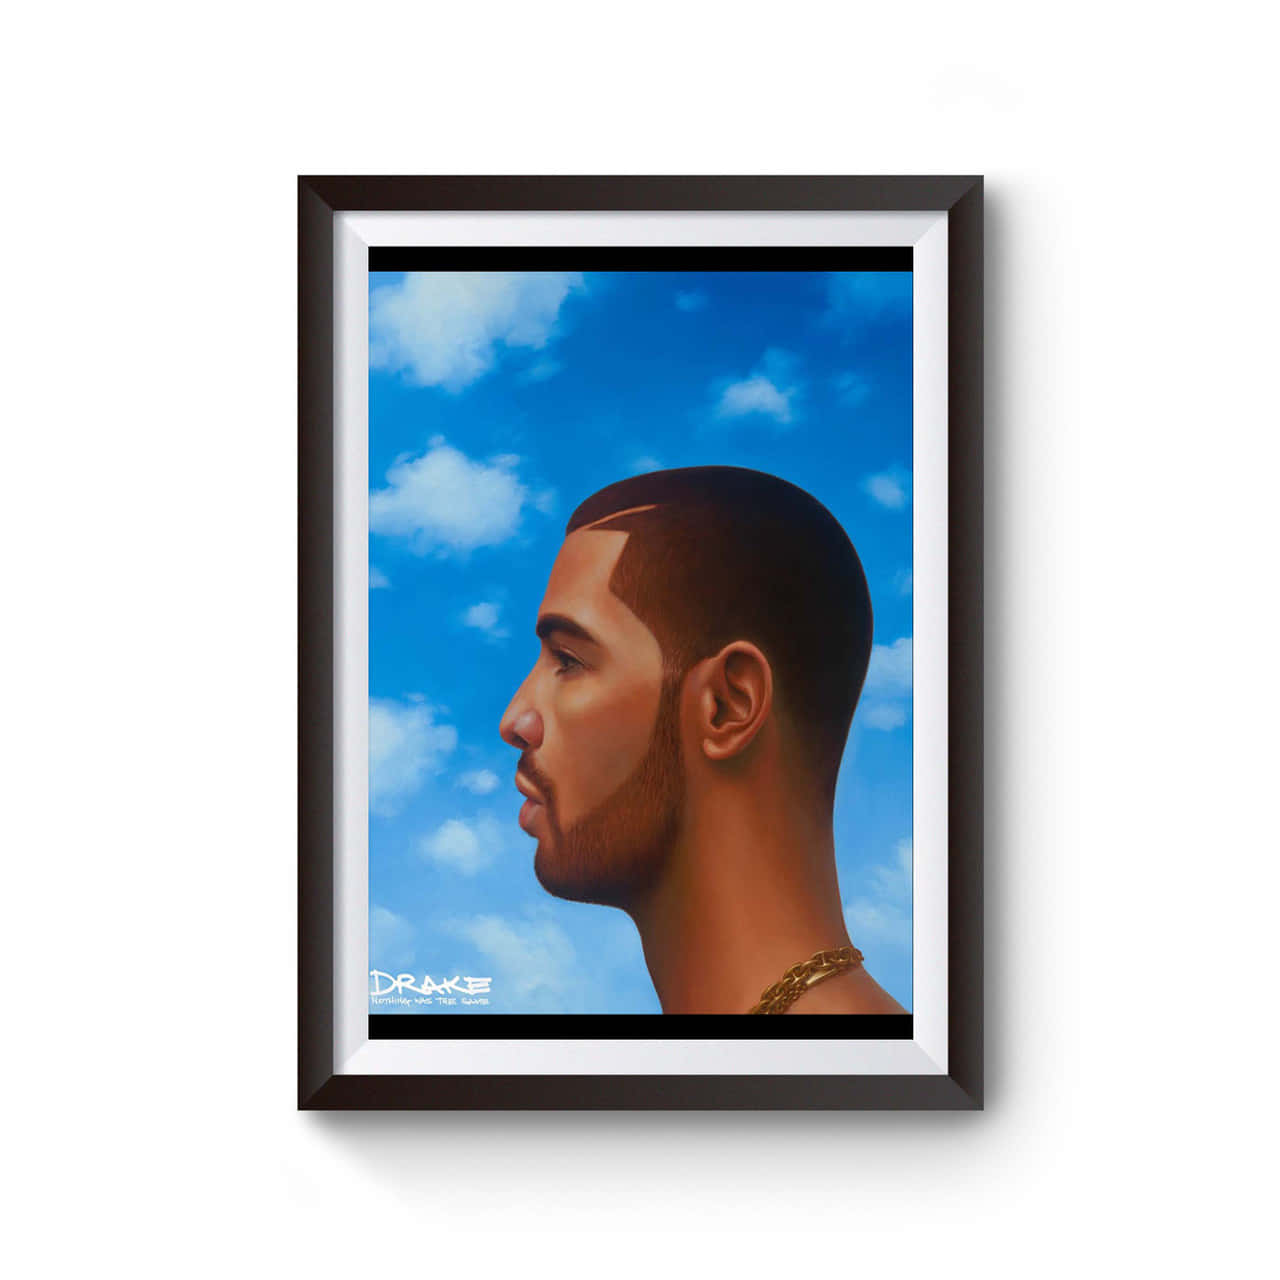 Bliv inspireret af Drakes album 